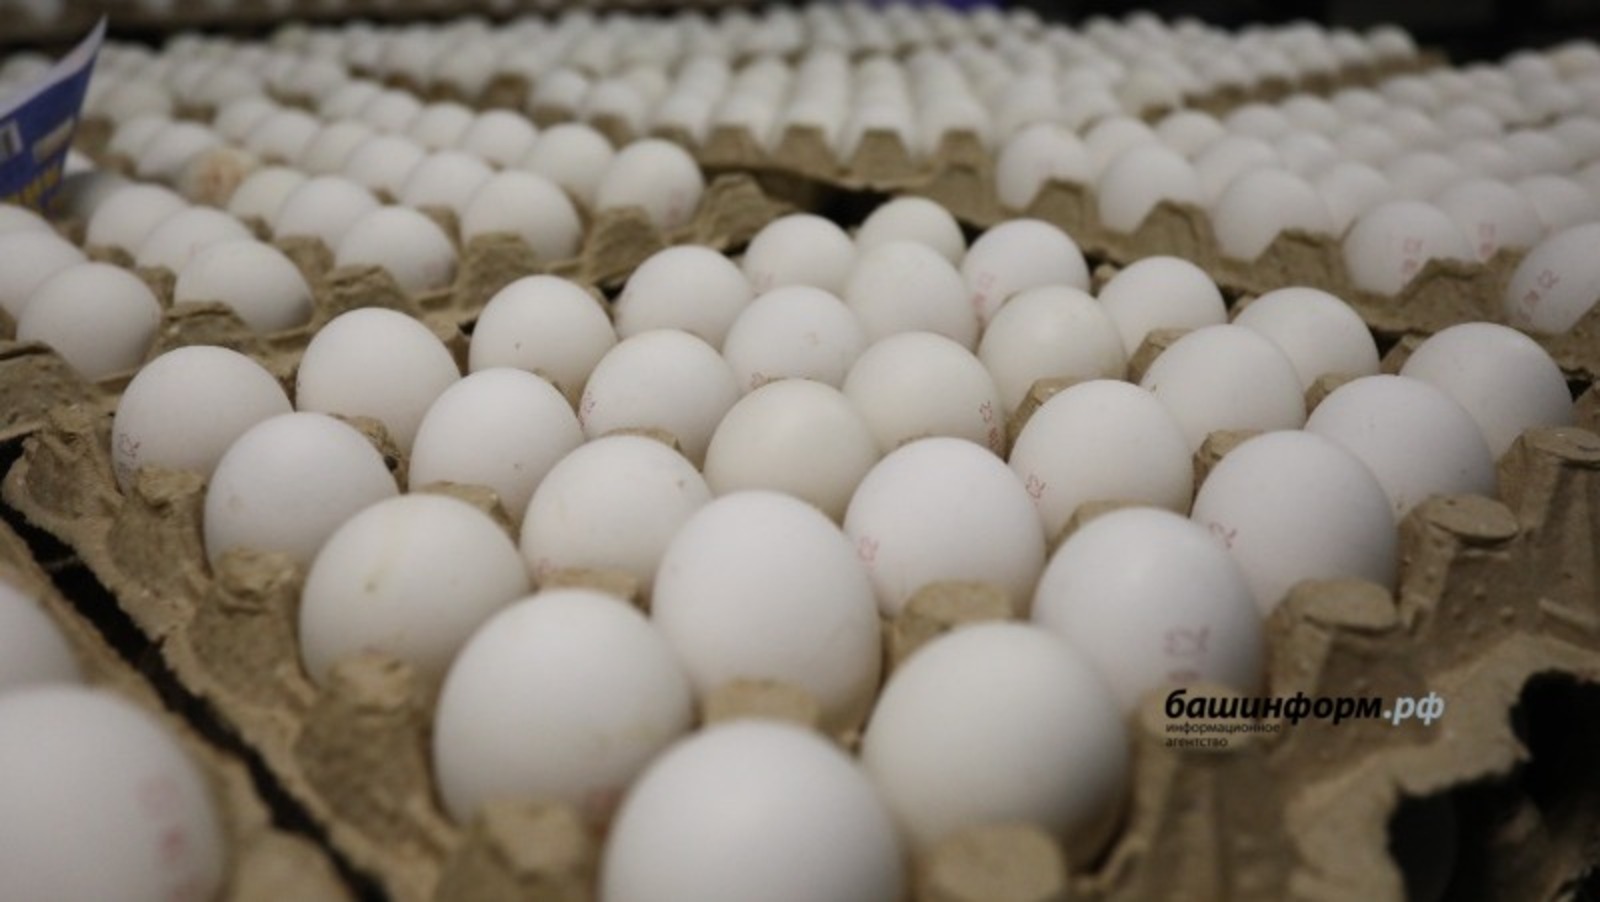 В Стерлитамаком районе антимонопольная служба  требует снизить цены на яйца